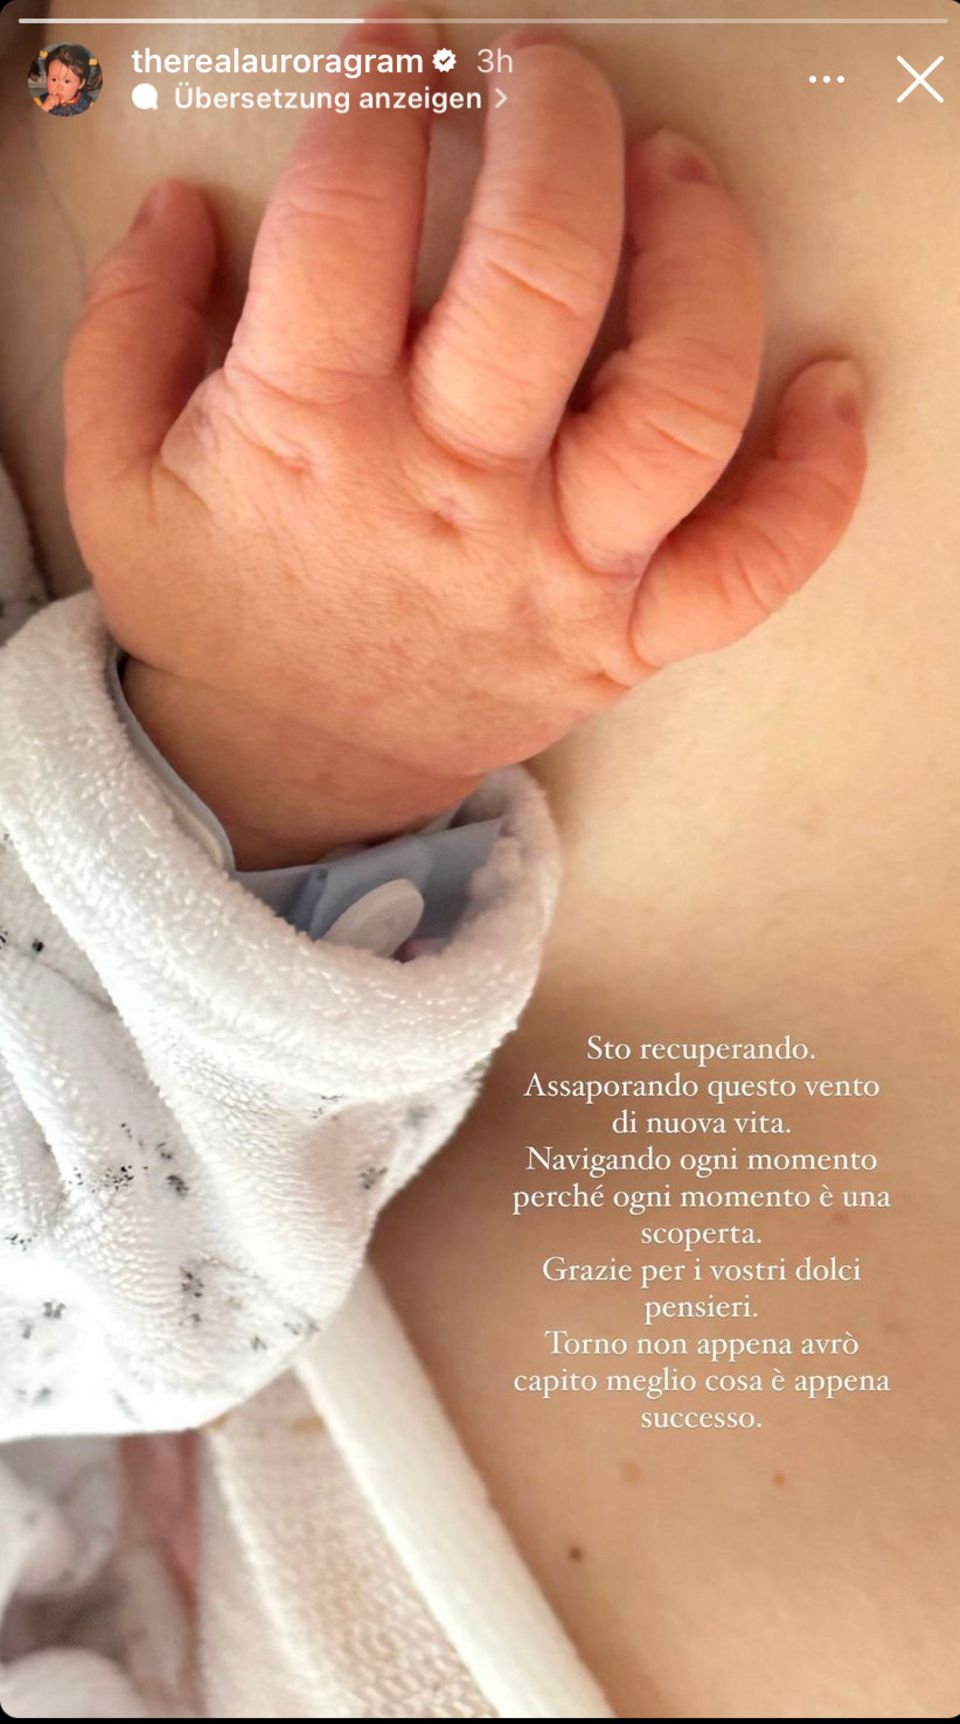 Aurora Ramazzotti: Zauberhafter Fotogruß aus dem Wochenbett! Baby Cesare rührt sie zu Tränen